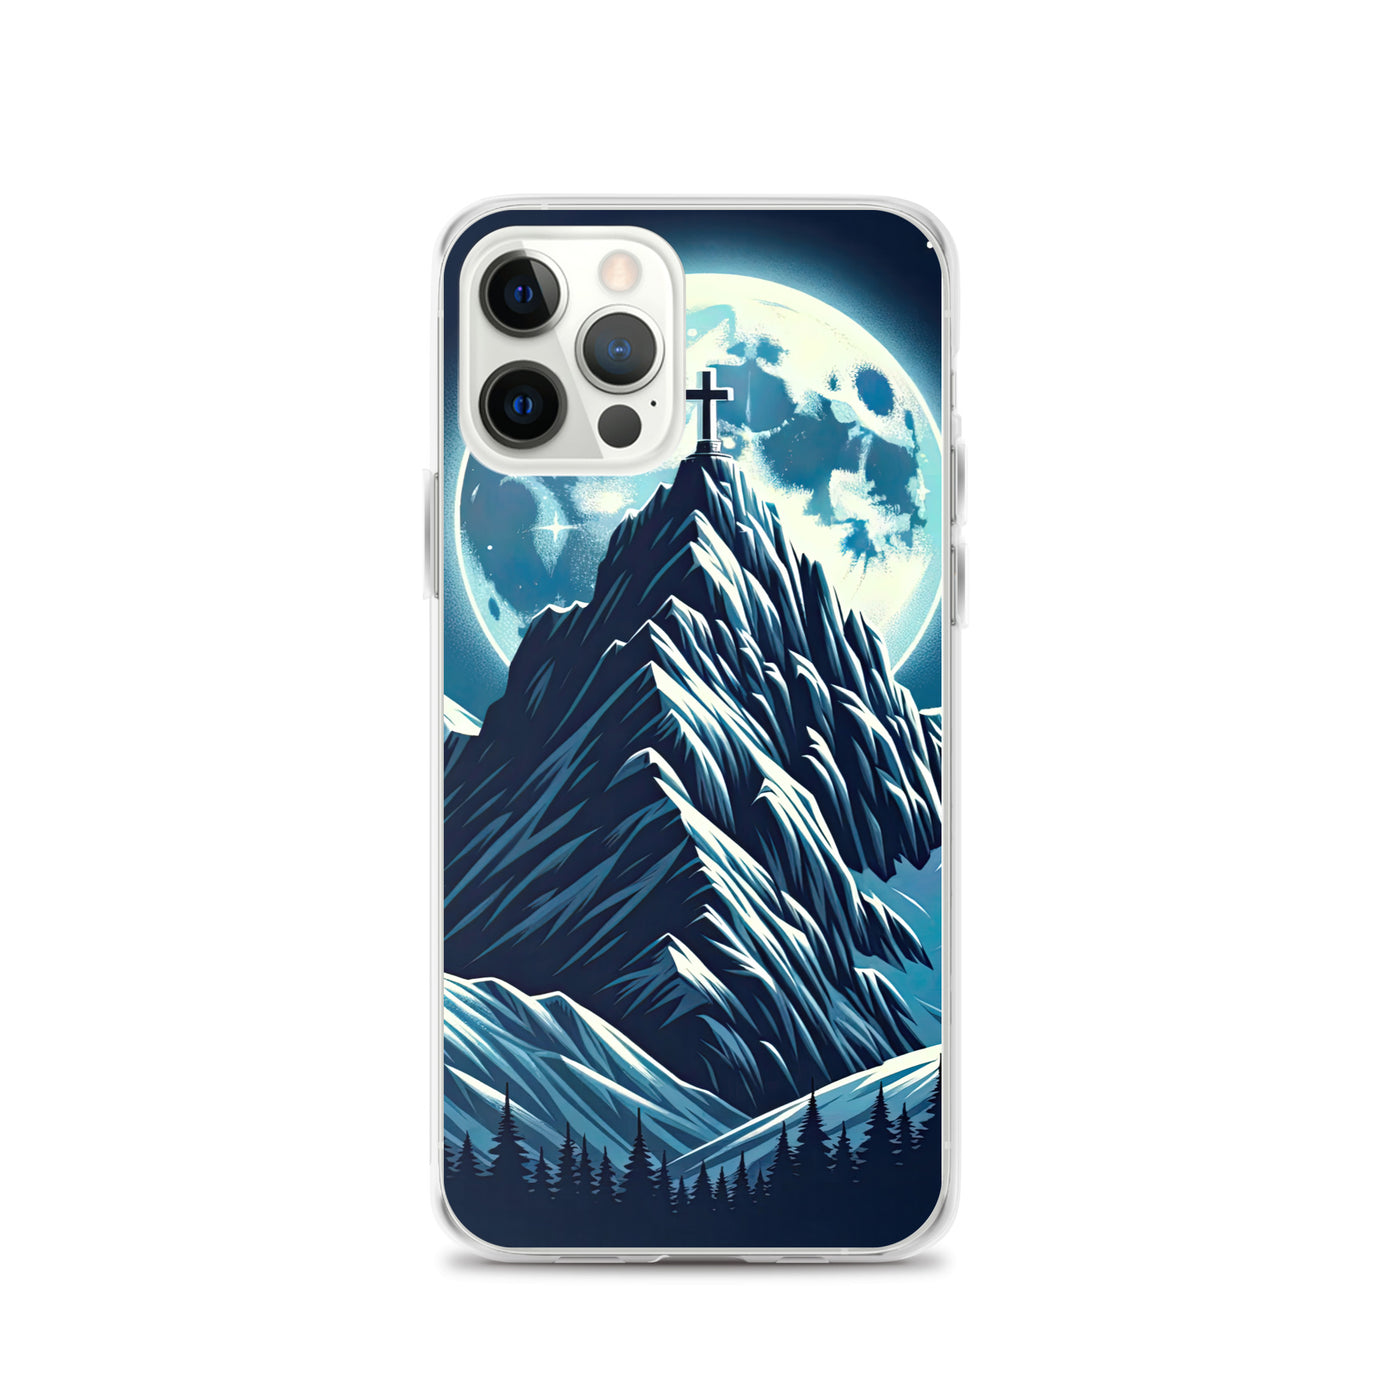 Mondnacht und Gipfelkreuz in den Alpen, glitzernde Schneegipfel - iPhone Schutzhülle (durchsichtig) berge xxx yyy zzz iPhone 12 Pro